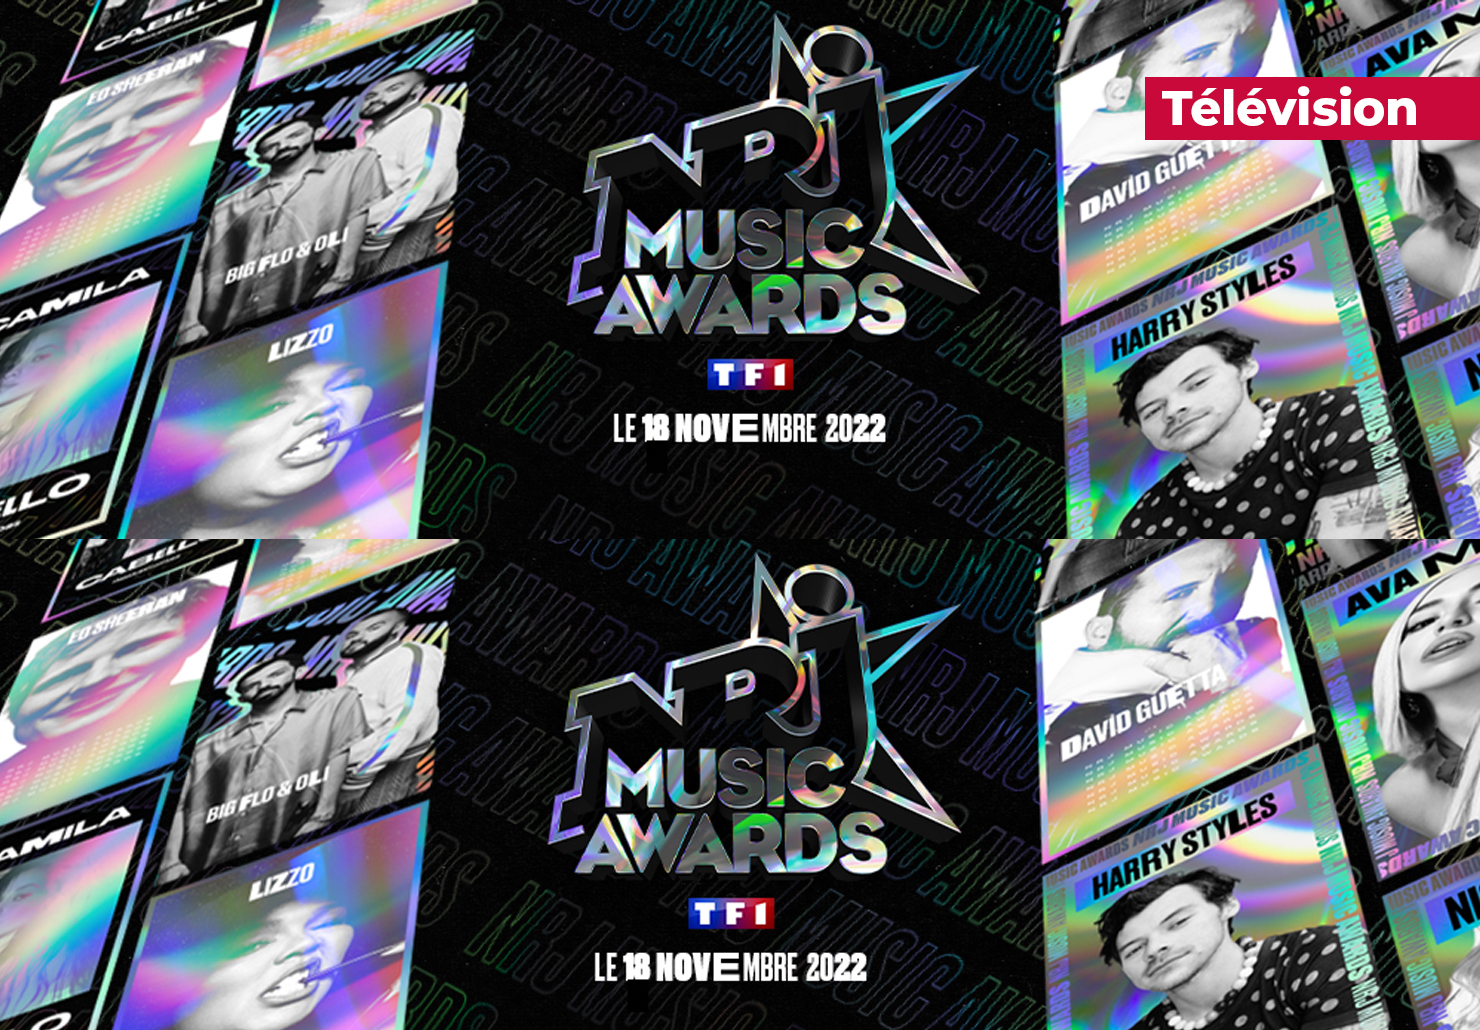 Nrj Music Awards 2022 TF1 18 novembre 2022 nommés catégorie Plare